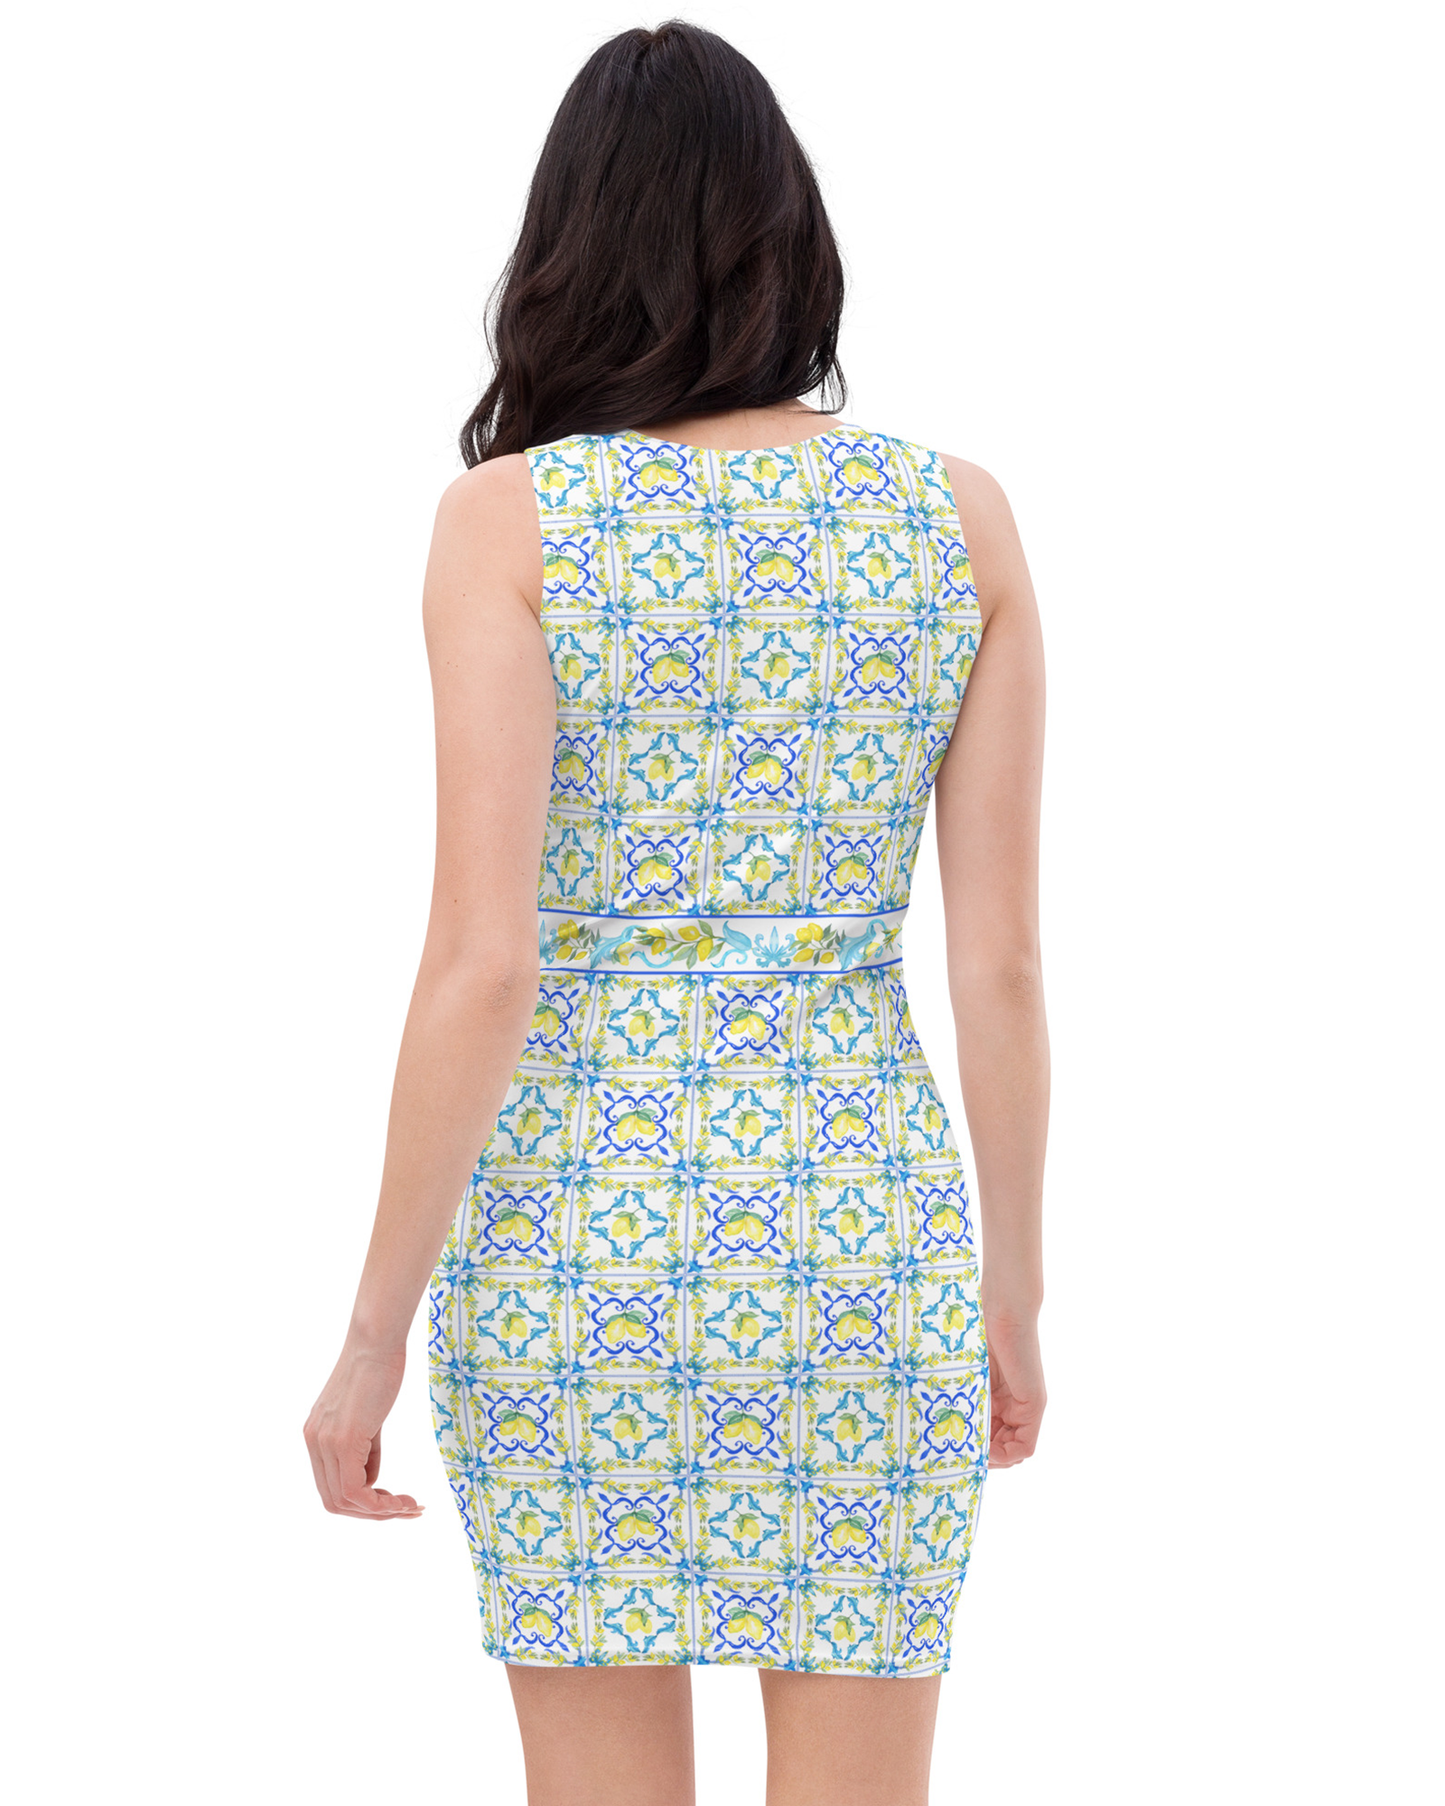 La Dolce Lemon Tile Tank Dress